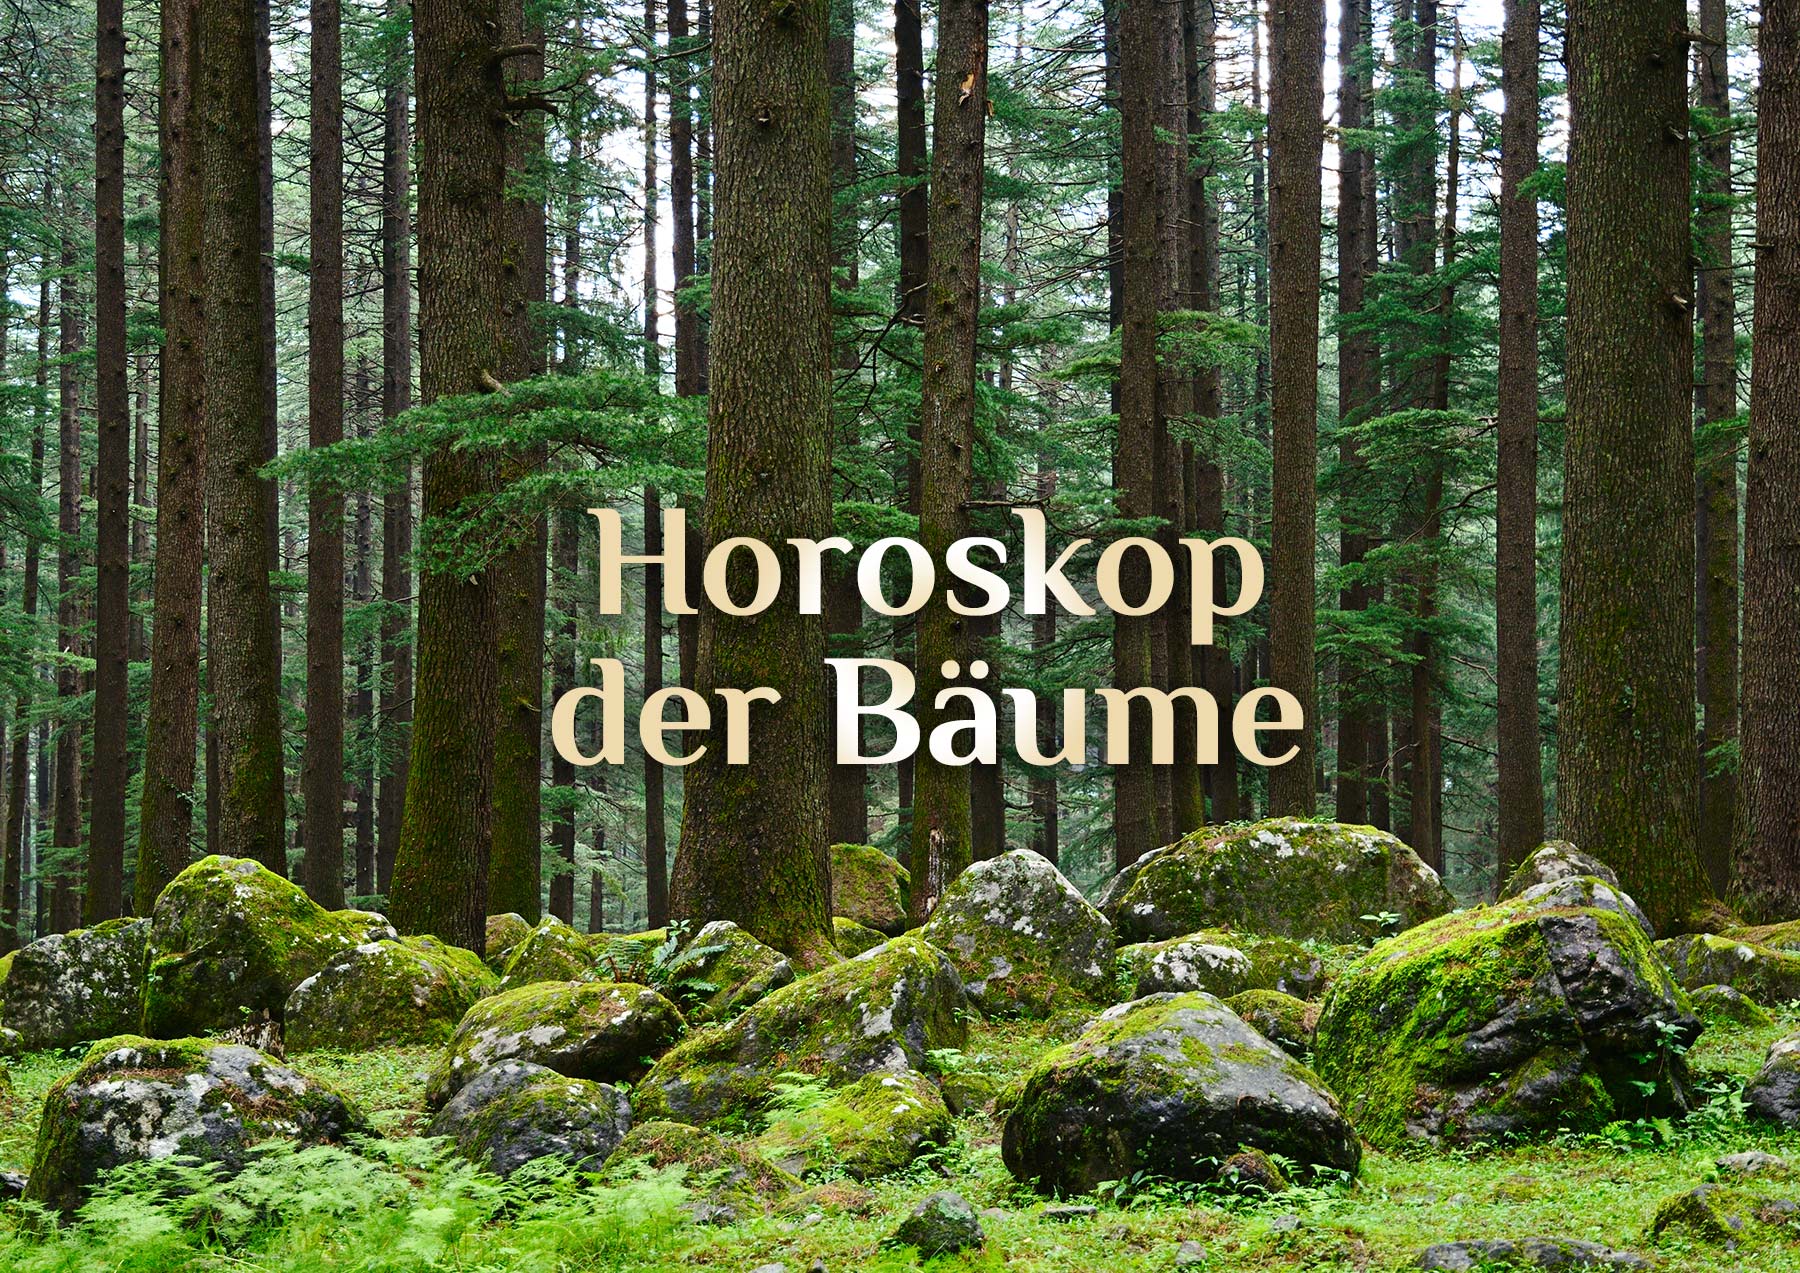 Dein Baumhoroskop | 🌳 Horoskop der Bäume 🌲| Keltisches Baum-Horoskop